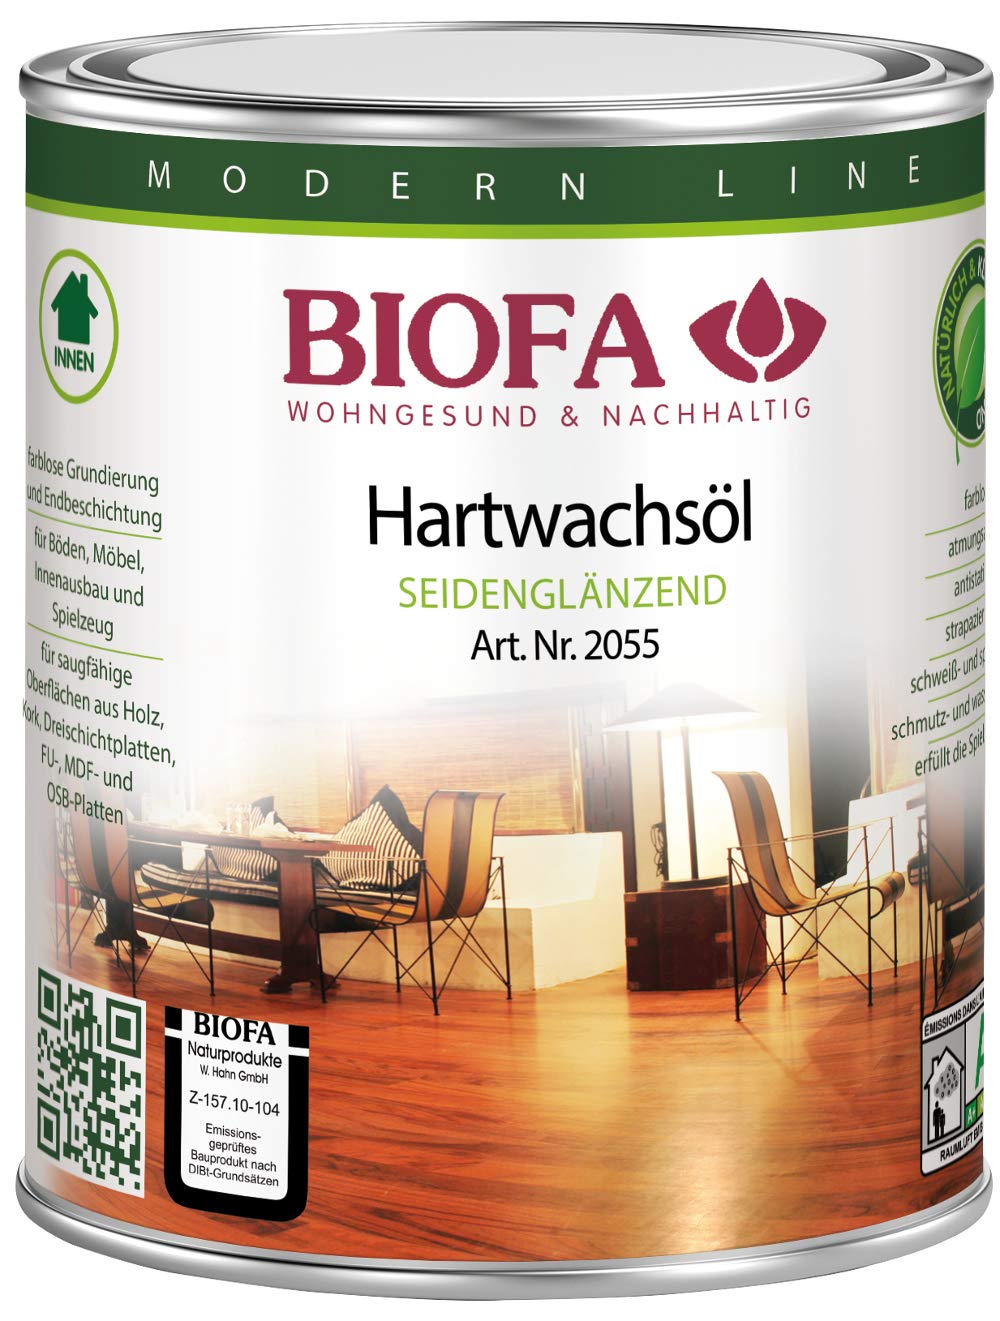 Biofa Hartwachsöl, seidenglänzend - für Parkett, Kork, Holz, Böden und zum Möbel ölen (1 Liter)